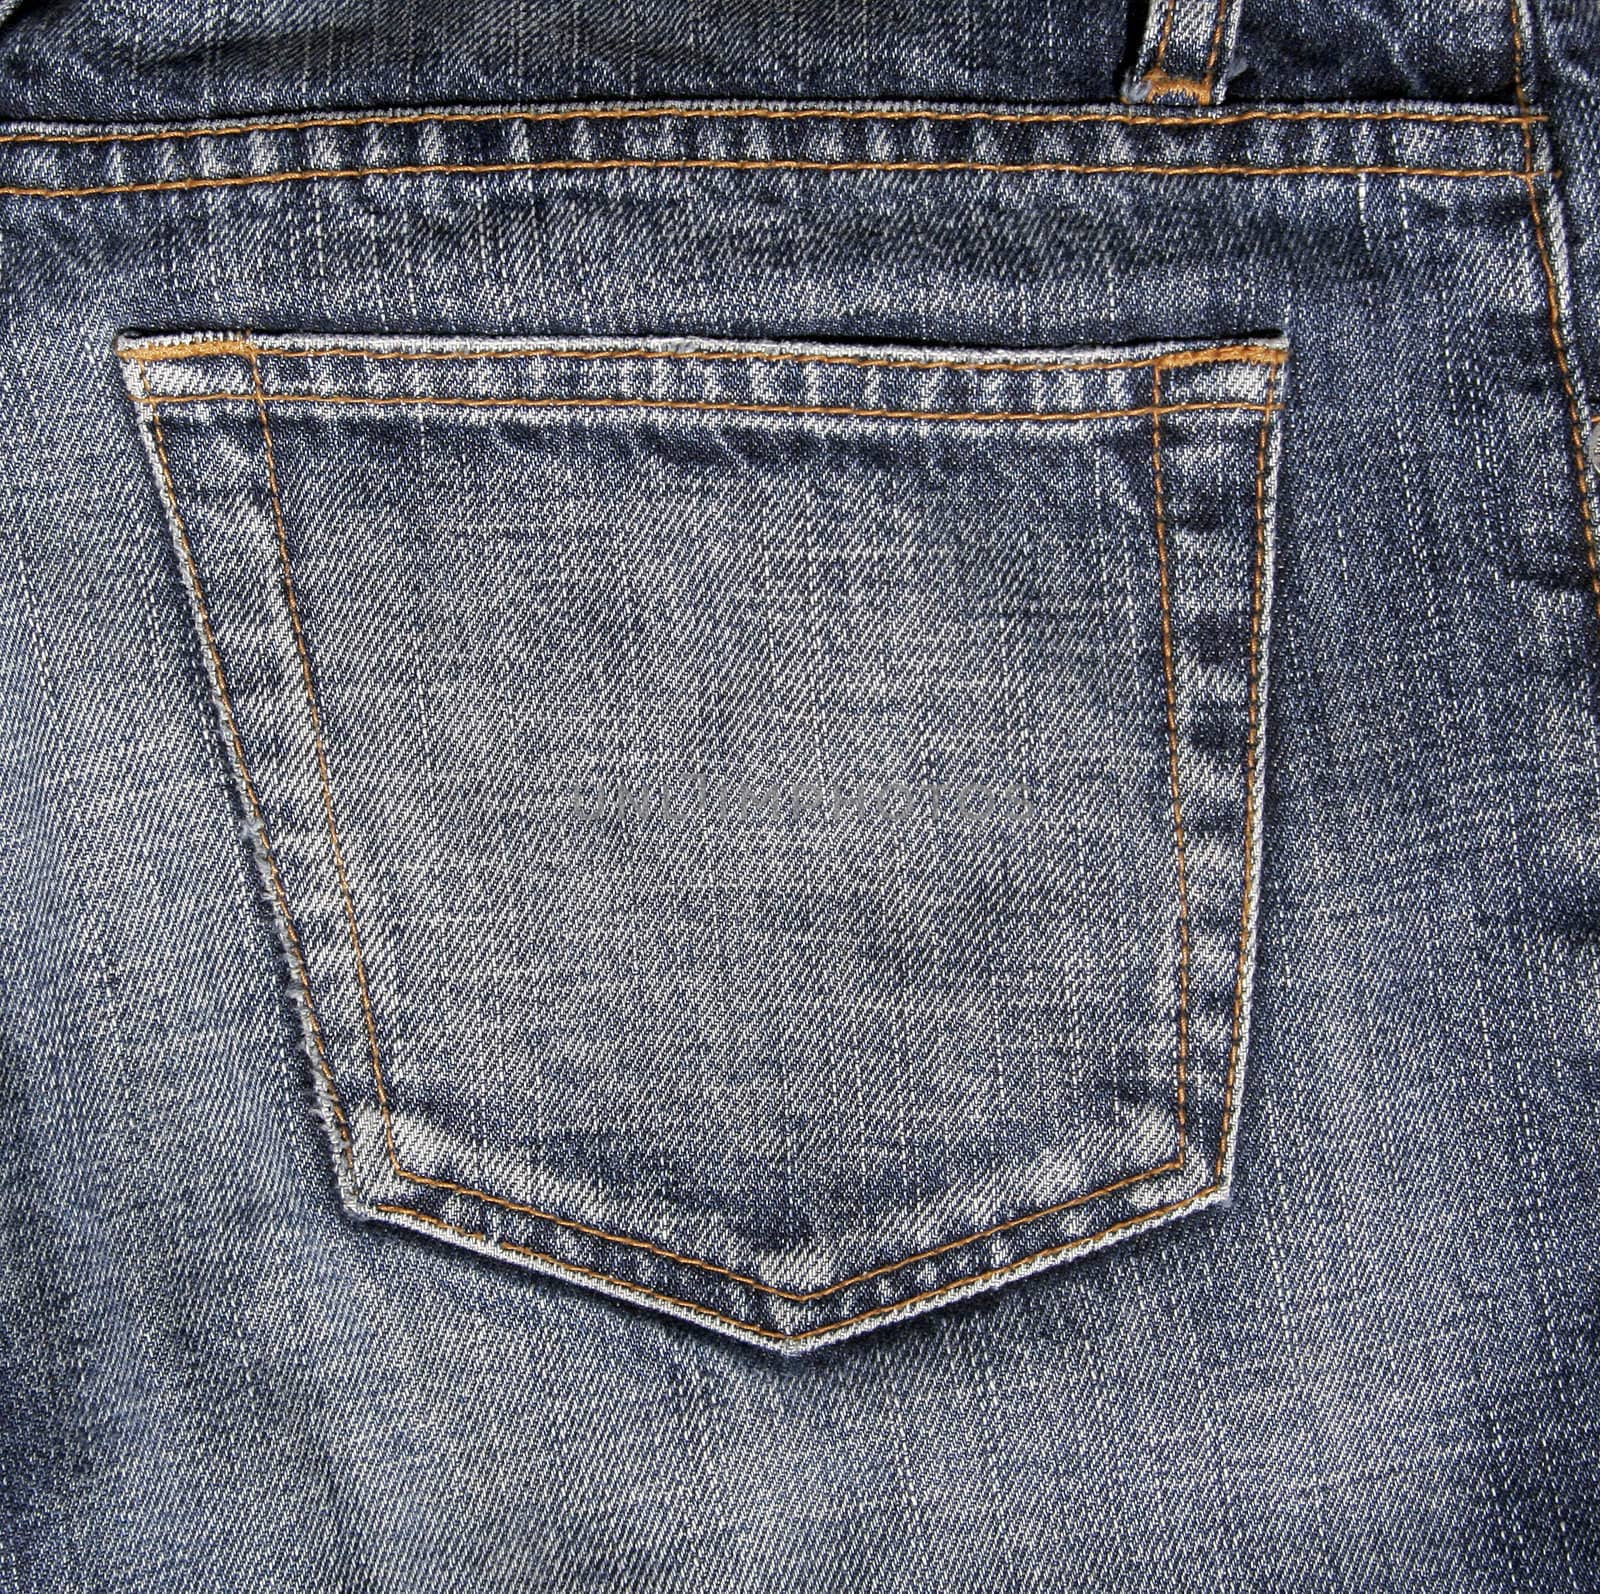 Blue Denim Jeans Pocket, Detailed Pattern, Background